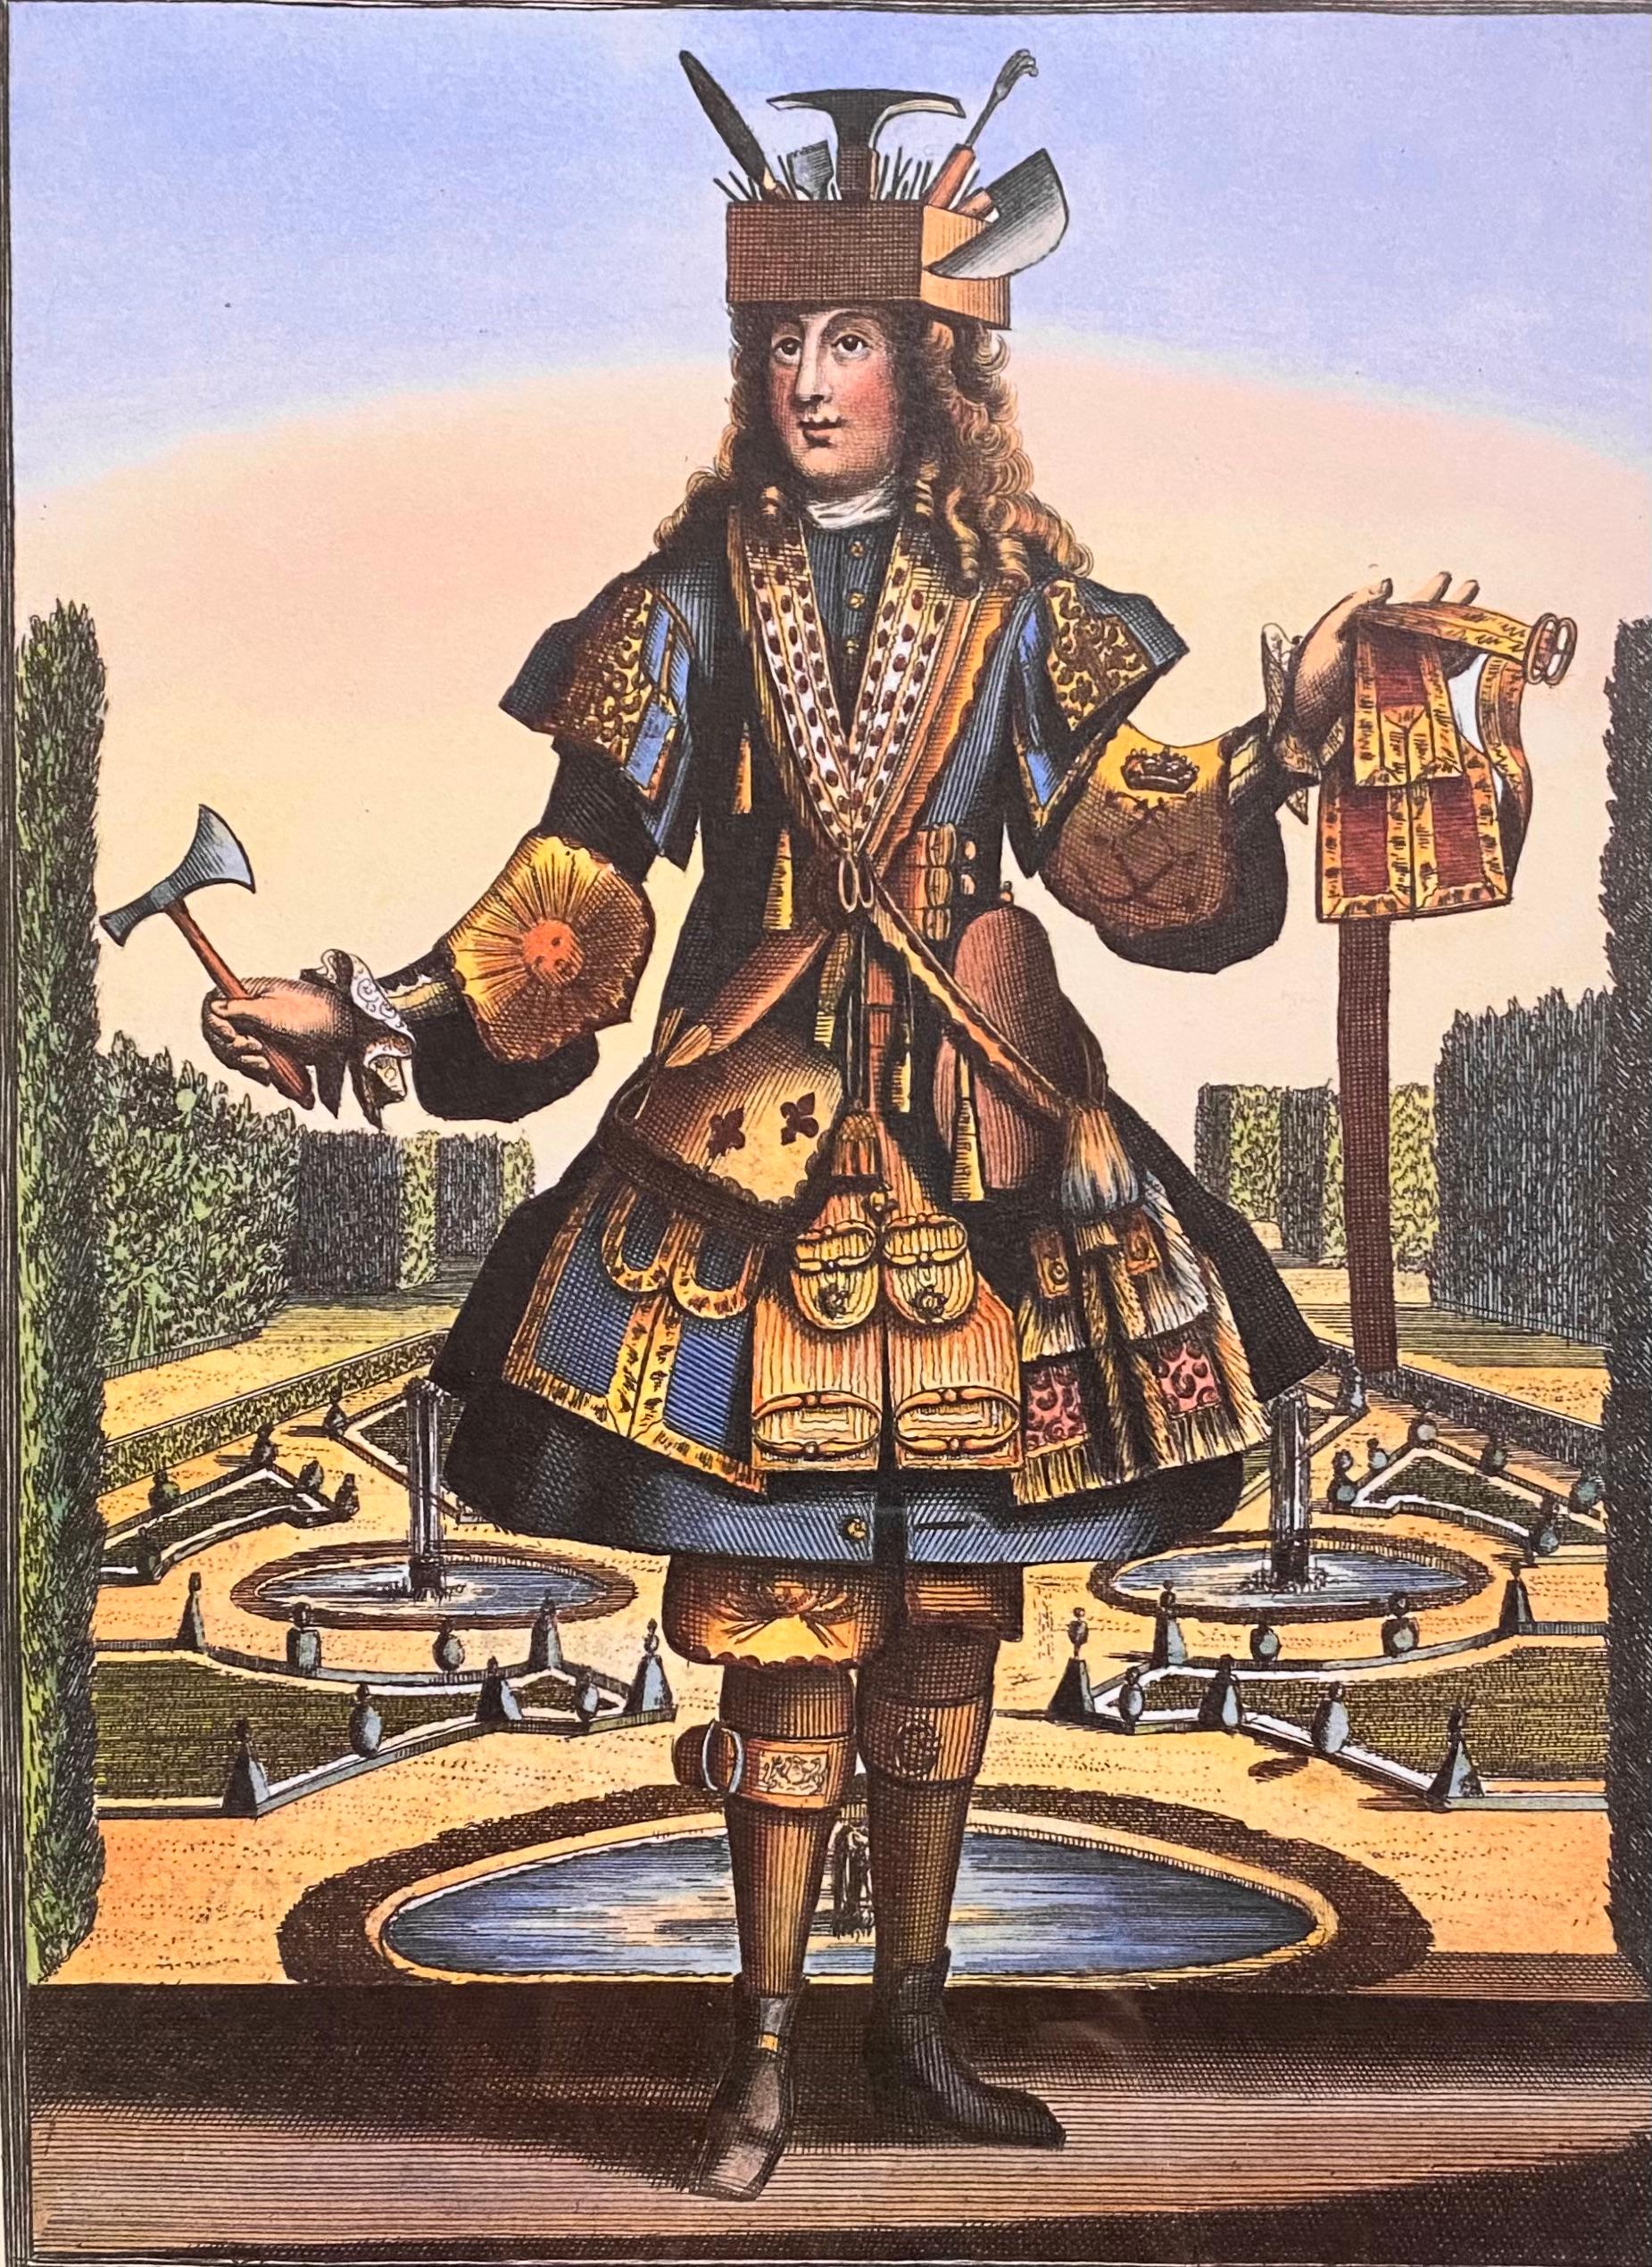 Nicolas de Larmessin Radierung - Habit de Ceinturier. druck aus dem 20. Jahrhundert.
Nicolas de Larmessin (1640-1725) war ein äußerst kreativer und produktiver Künstler. Nicolas war Teil einer langen Familiengeschichte der Familie de Larmessin